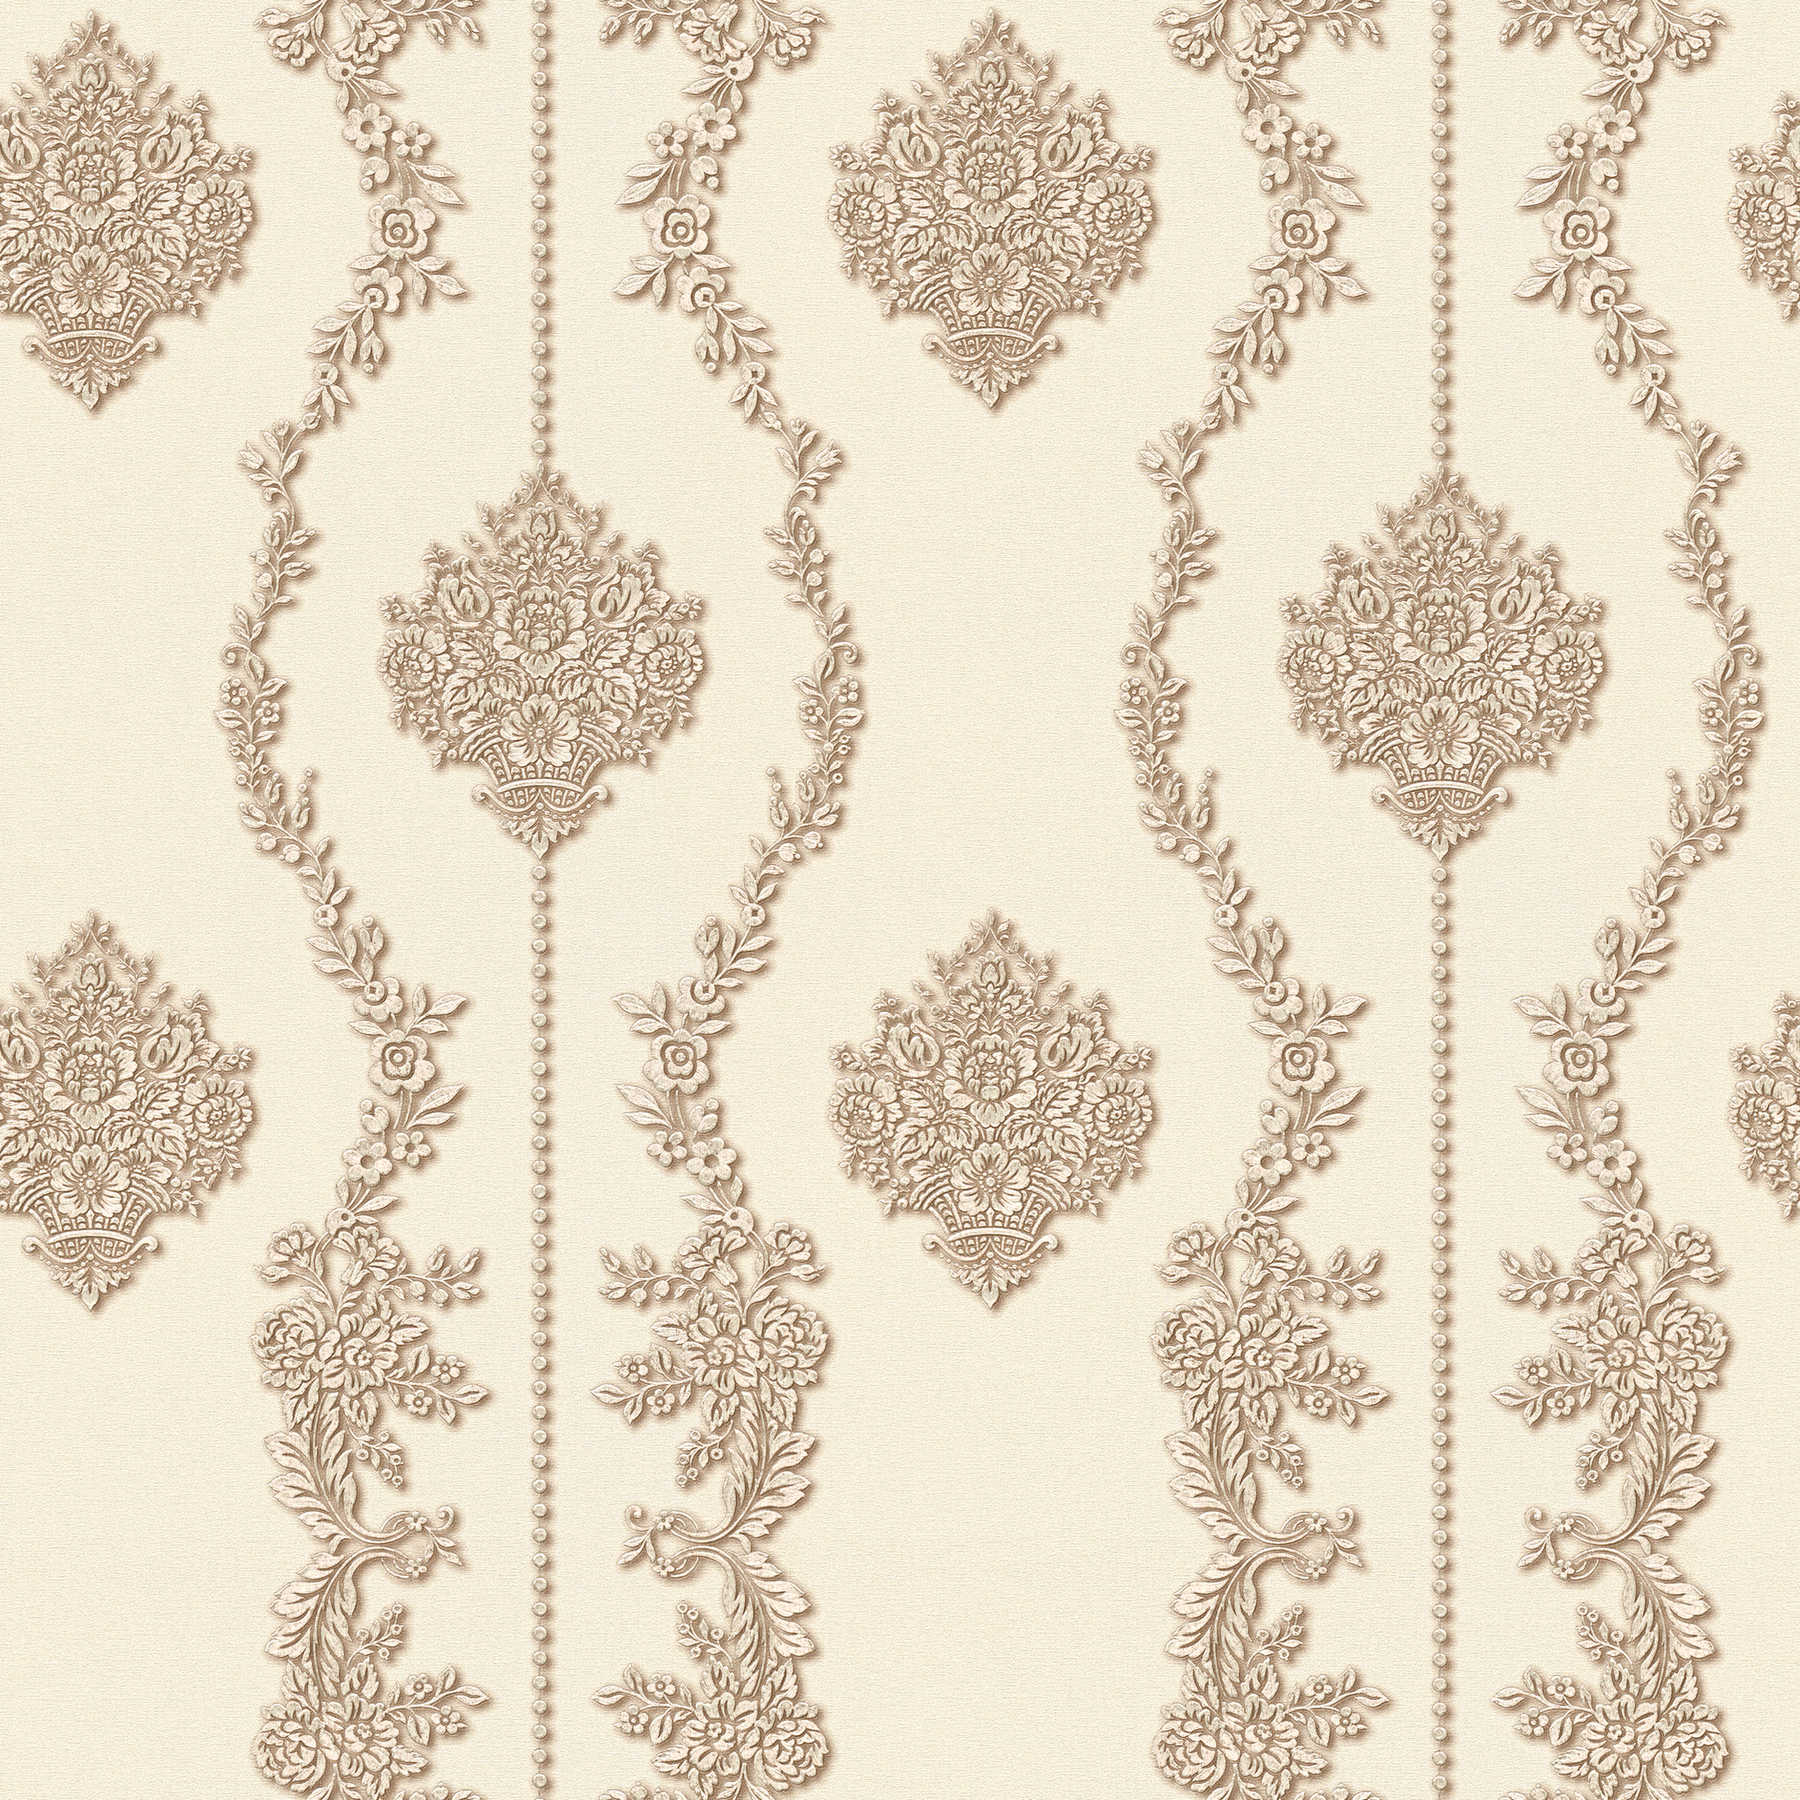 Classic Décor behang met bloemen ornament patroon - Beige, Metallic
